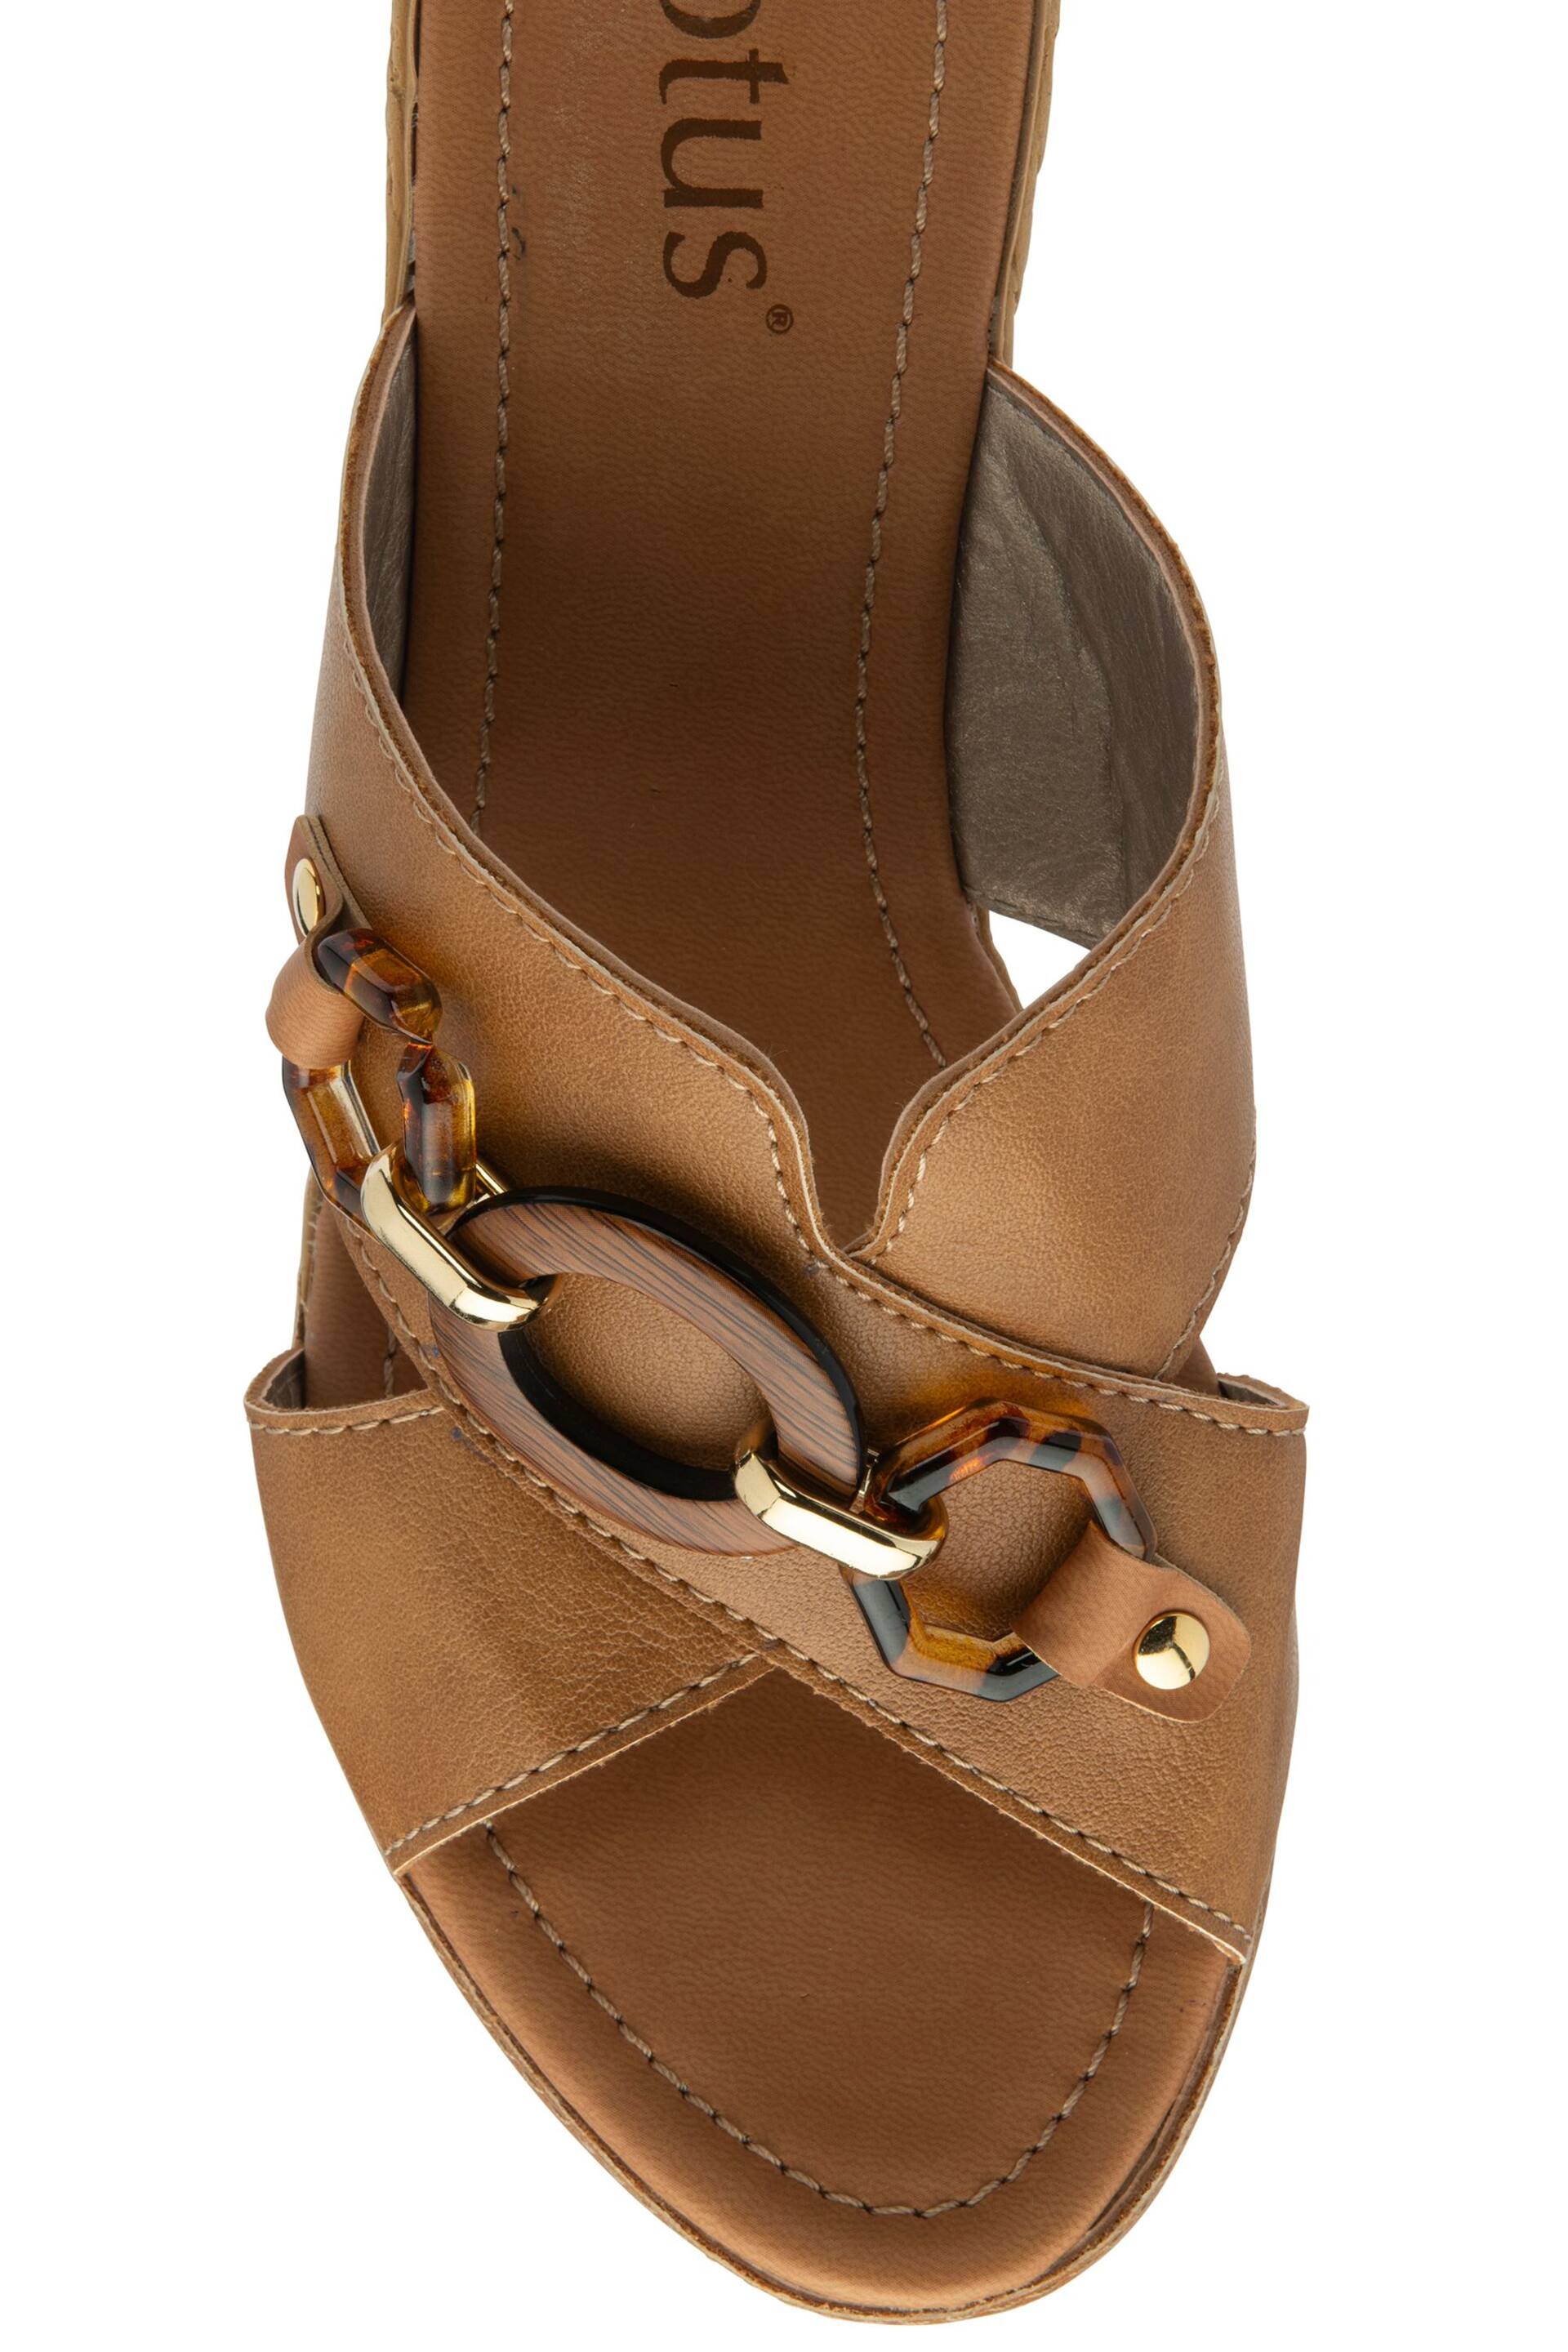 Lotus Brown Casual Wedge Mule Sandals - Image 4 of 4